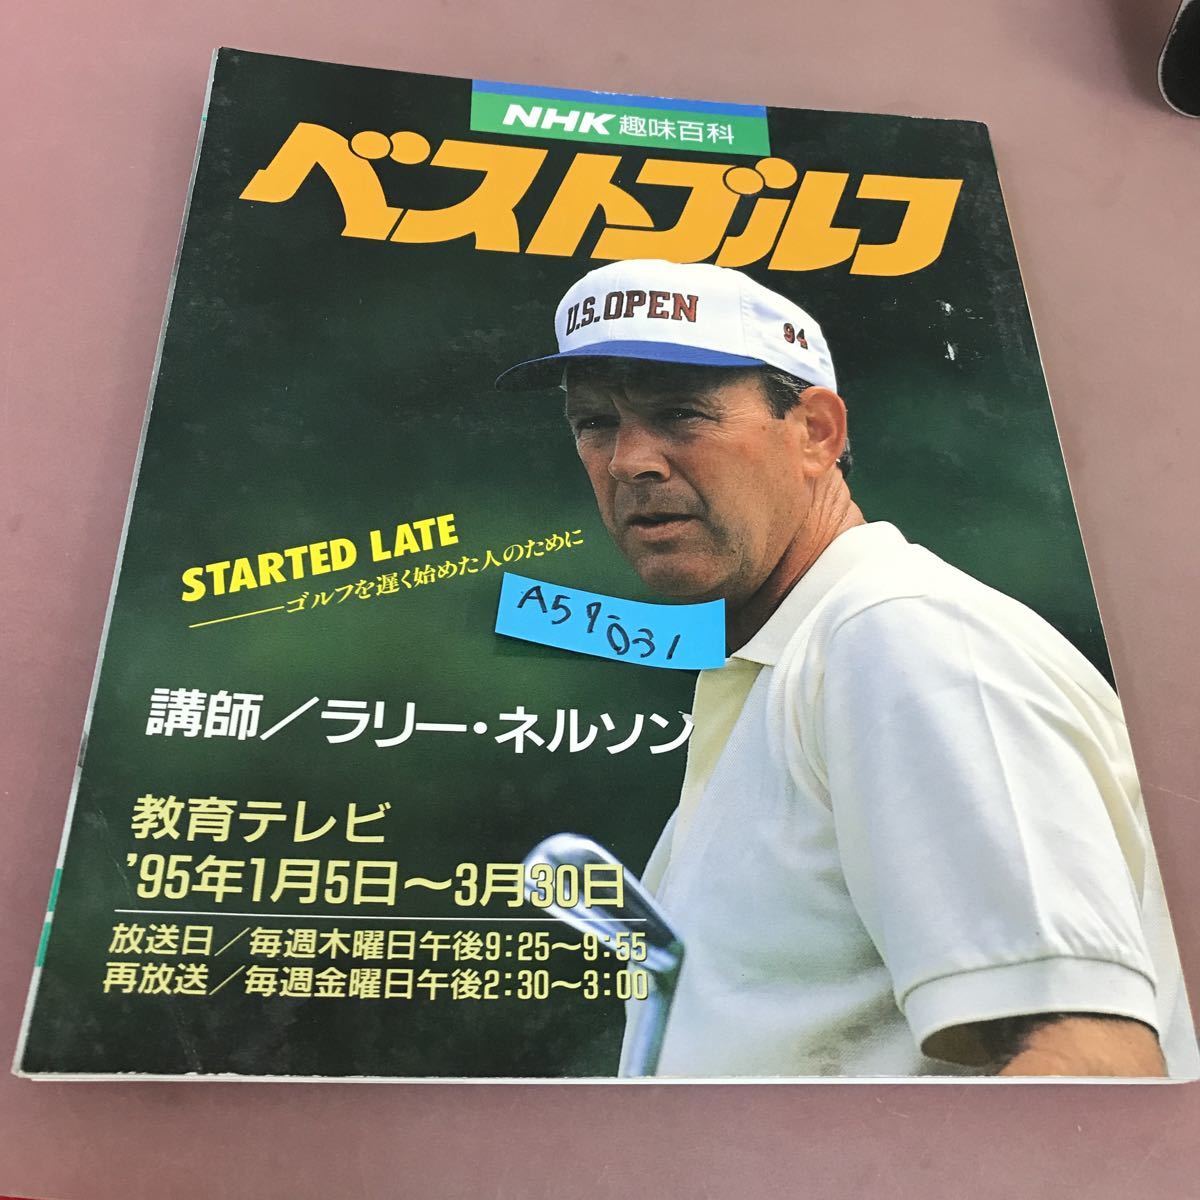 A57-031 NHK хобби различные предметы лучший Golf 95 год 1 месяц ~3 месяц Япония радиовещание выпускать ассоциация 